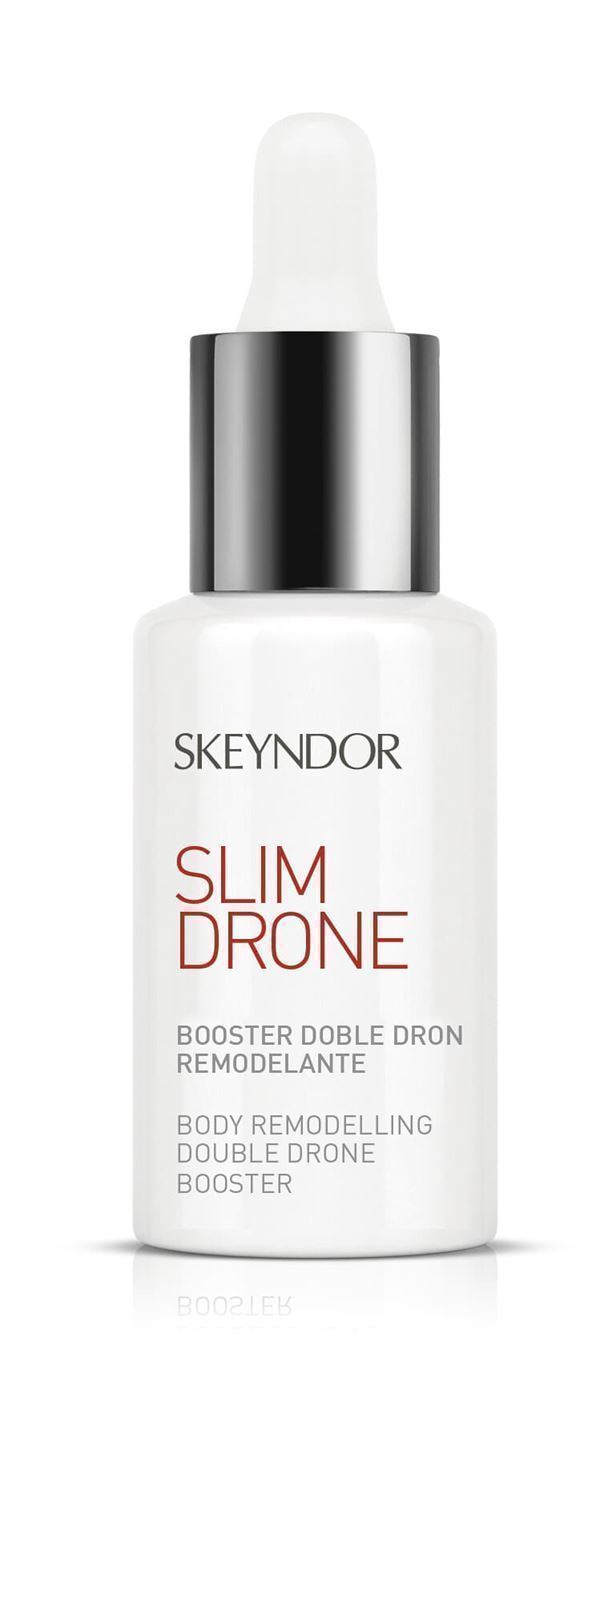 SKEYNDOR PACK CREMA + BOOSTER DOBLE DRON REMODELANTE - Imagen 3